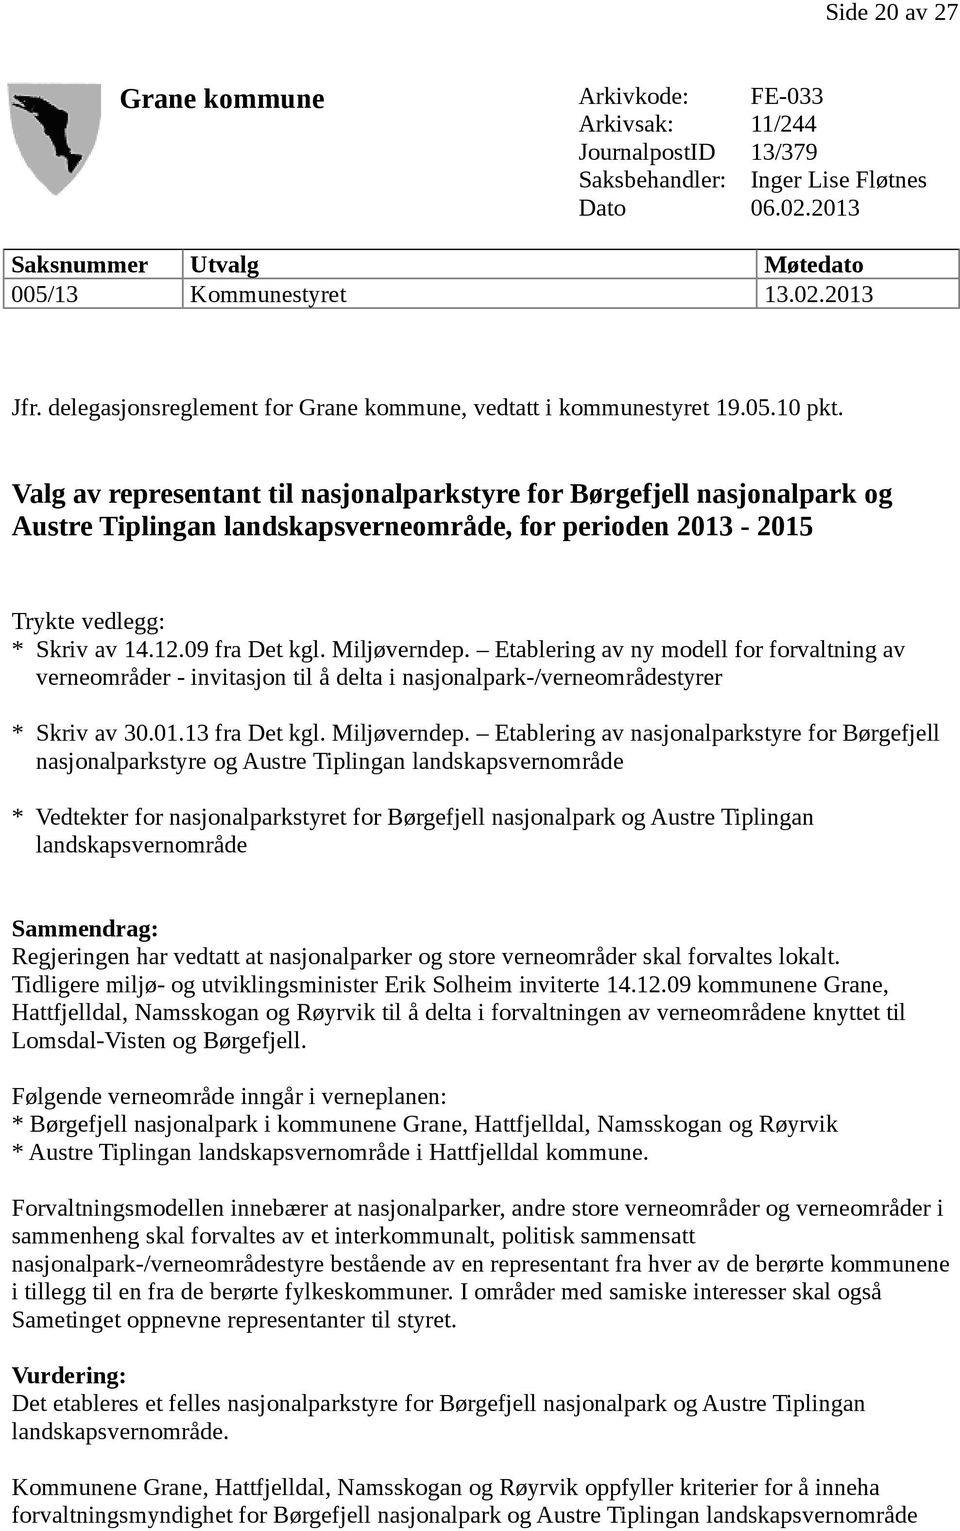 Valg av representant til nasjonalparkstyre for Børgefjell nasjonalpark og Austre Tiplingan landskapsverneområde, for perioden 2013-2015 Trykte vedlegg: * Skriv av 14.12.09 fra Det kgl. Miljøverndep.